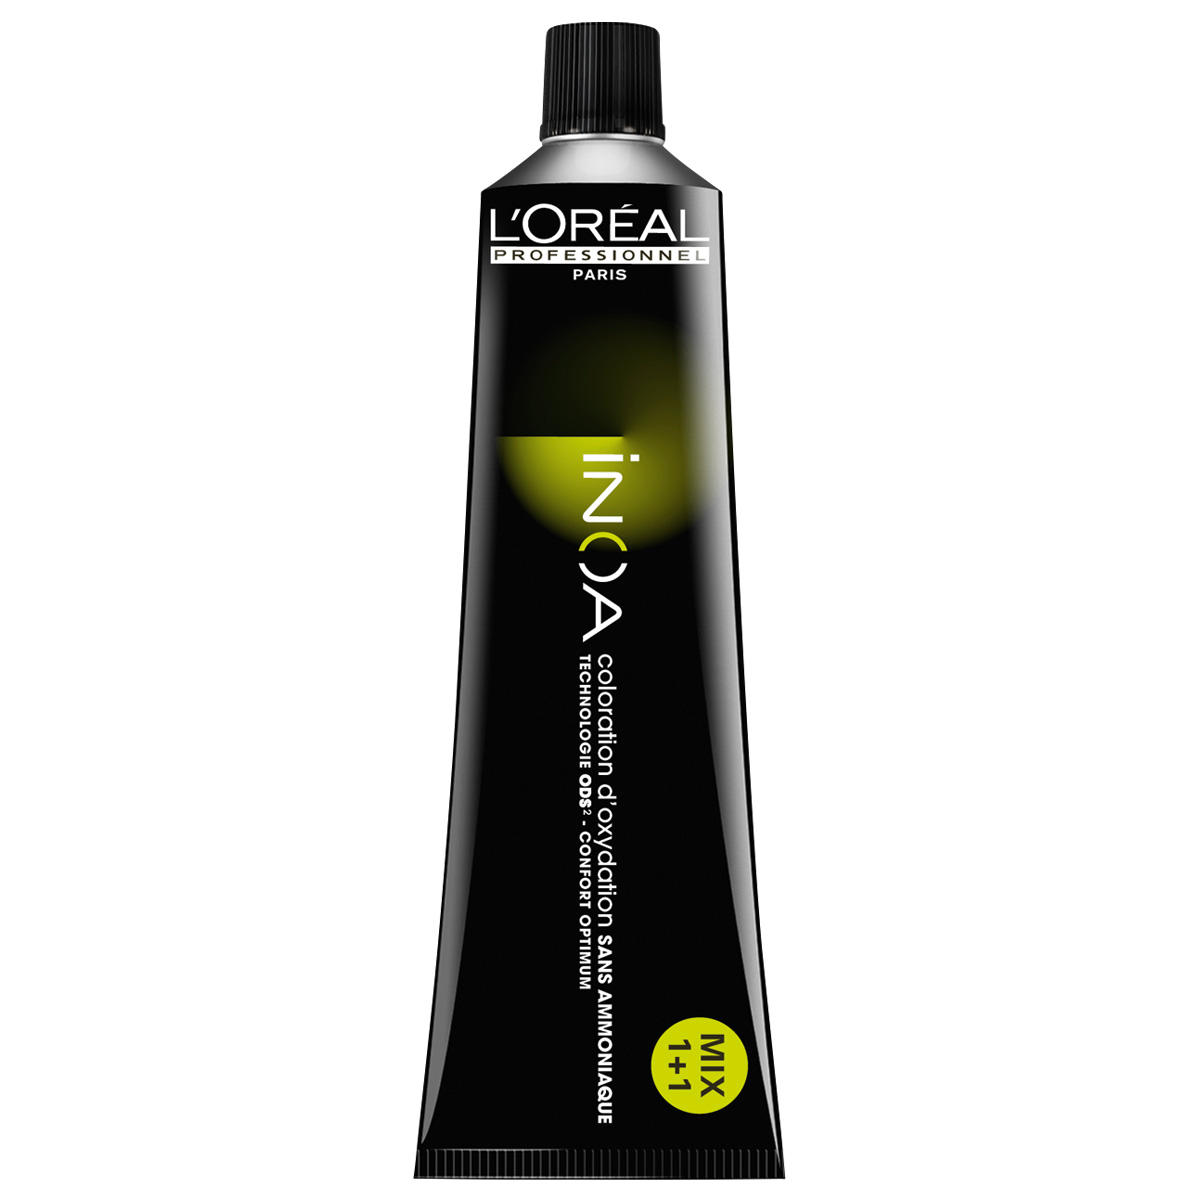 L'Oréal Professionnel Paris Coloration 9 Biondo Molto Chiaro, Tubo 60 ml